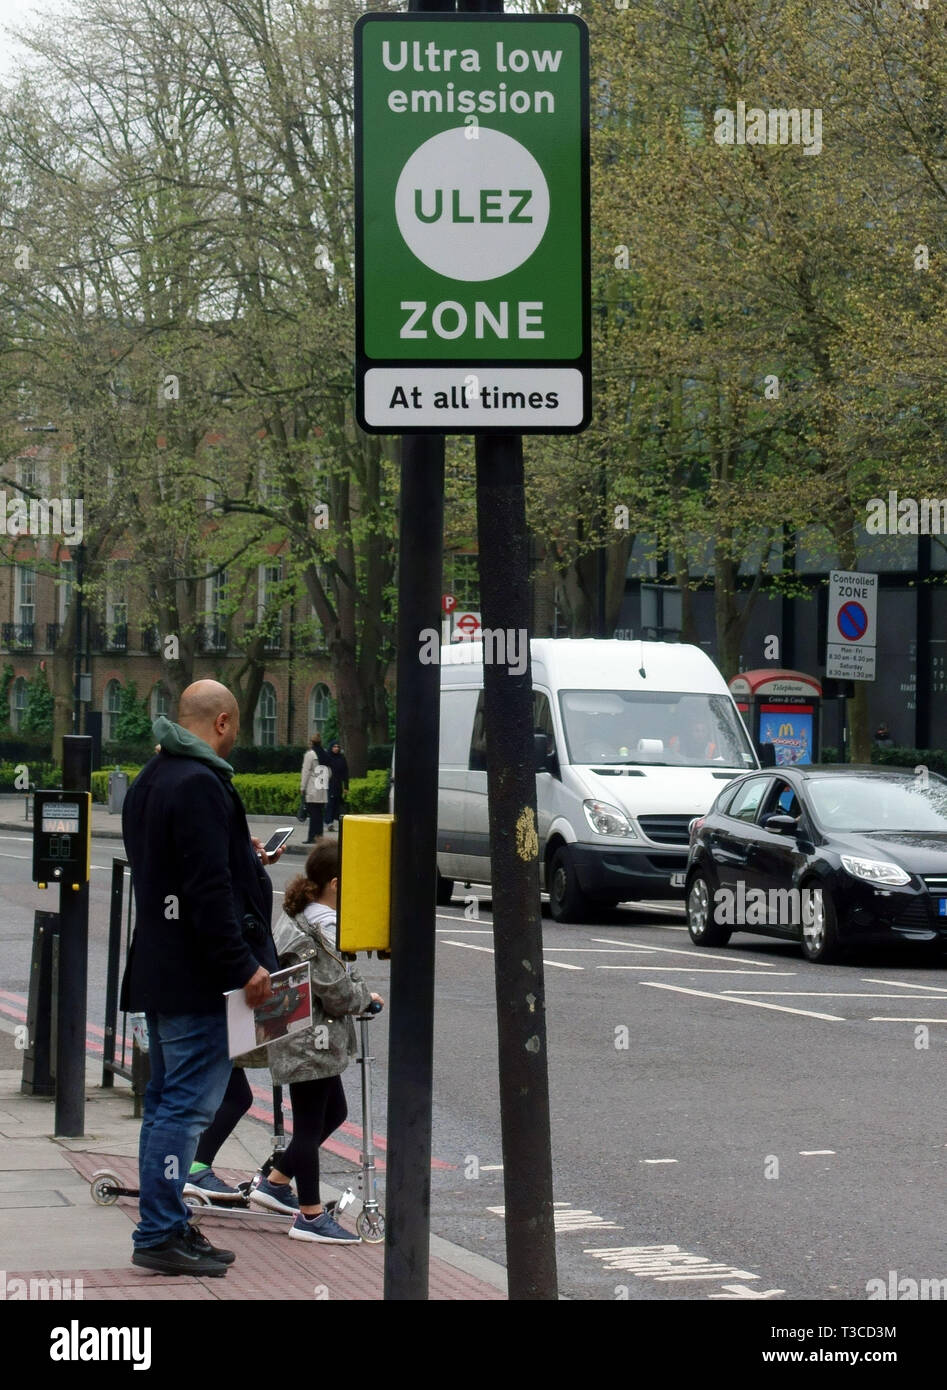 Ultra Low Emission Zone (ULEZ) est entré en vigueur dans la zone de péage urbain de Londres le 8 avril 2019 Banque D'Images